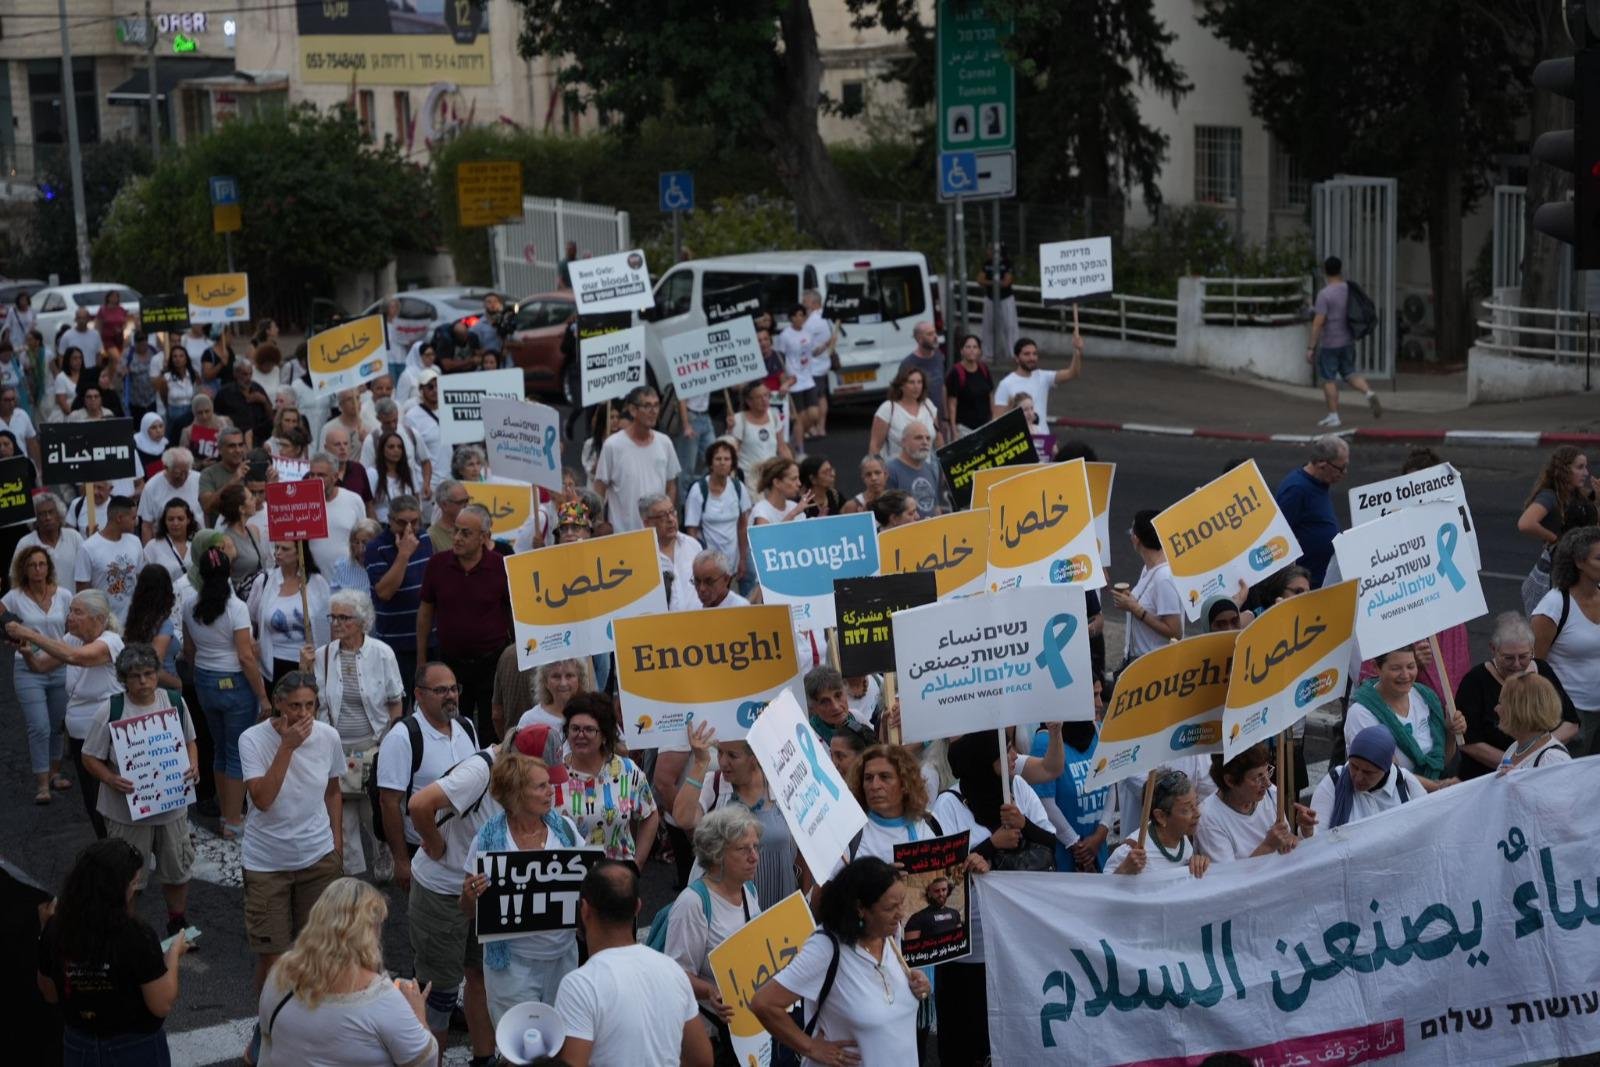 حيفا: اختتام "مسيرة الأموات"- حضور مهيب رافض للعنف والجريمة!-23